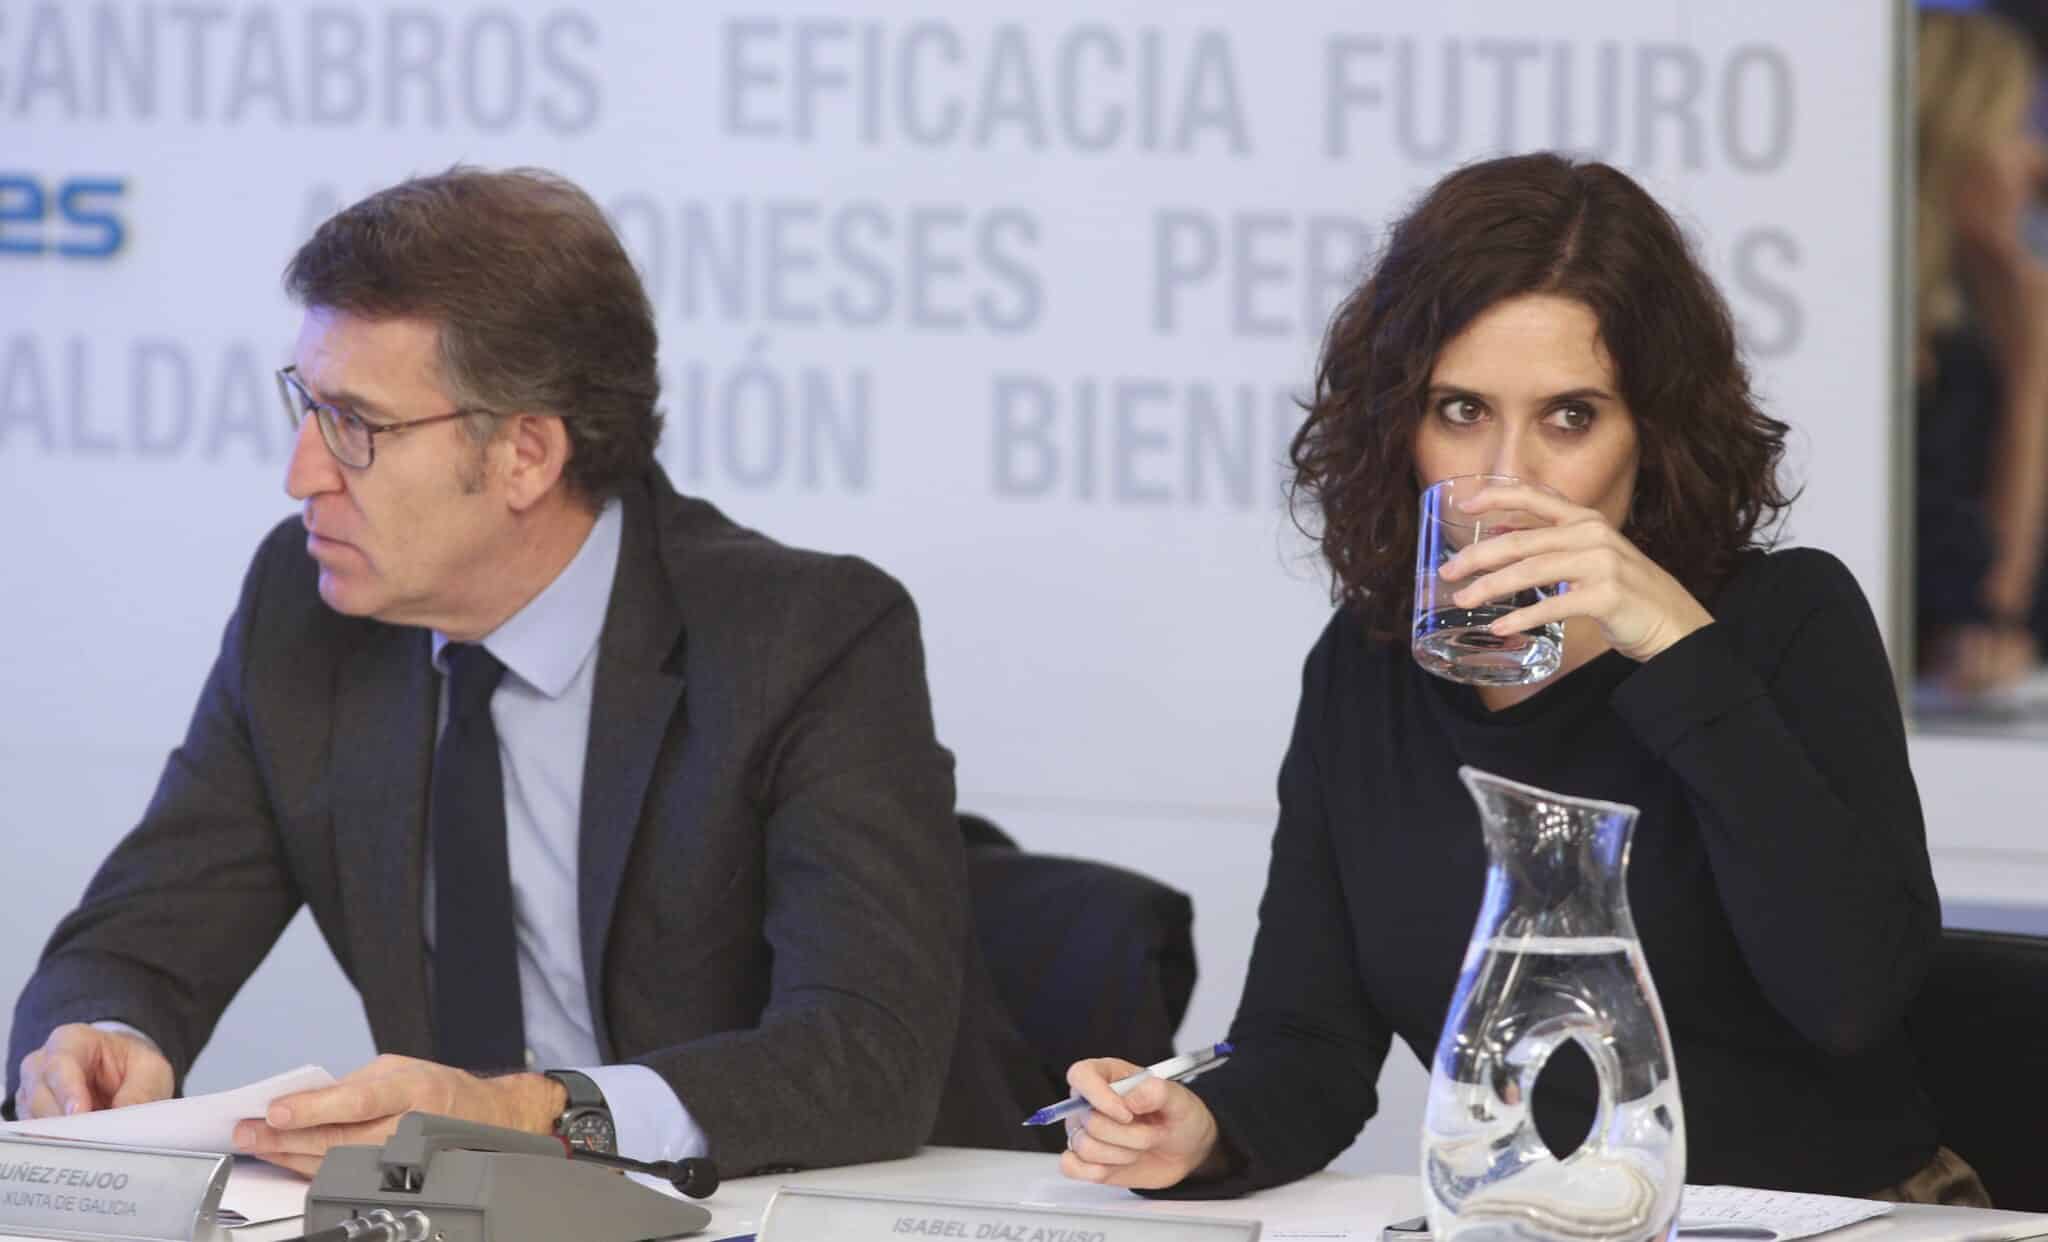 Alberto Núñez Feijóo e Isabel Díaz Ayuso, del Partido Popular, en una comparecencia